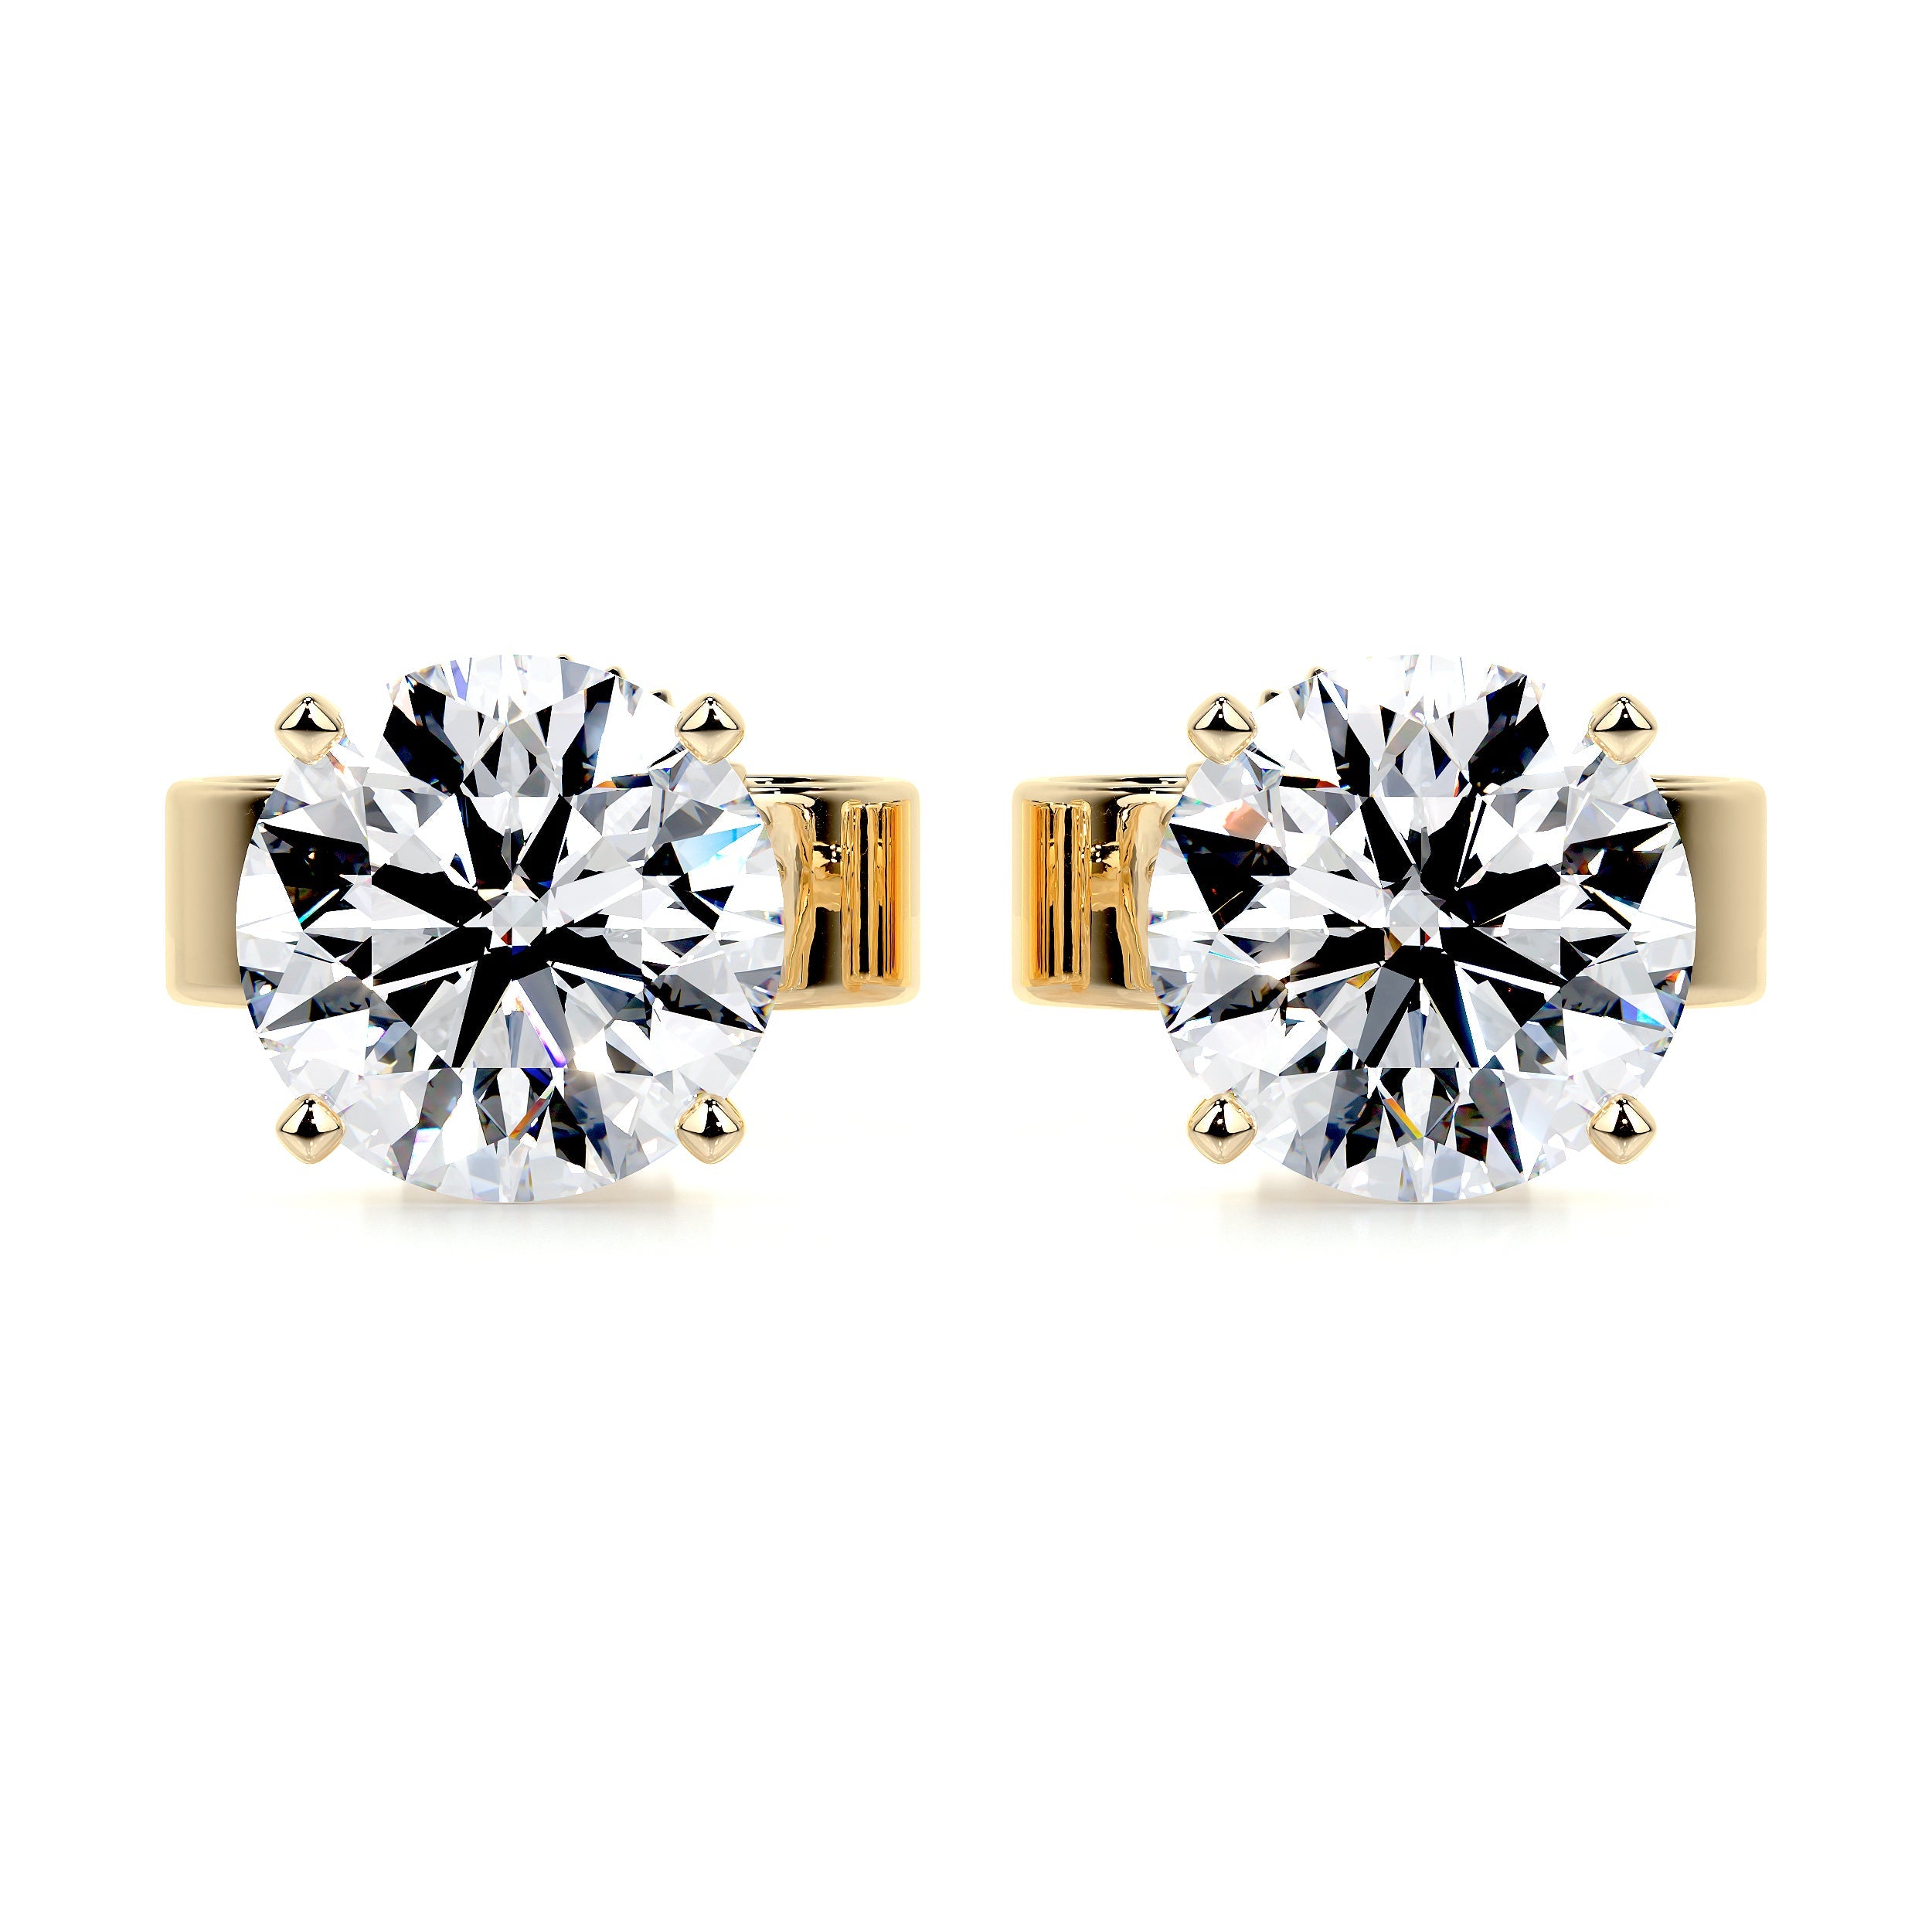 Allen Lab Grown Diamond Earrings   (5 Carat) -18K Yellow Gold